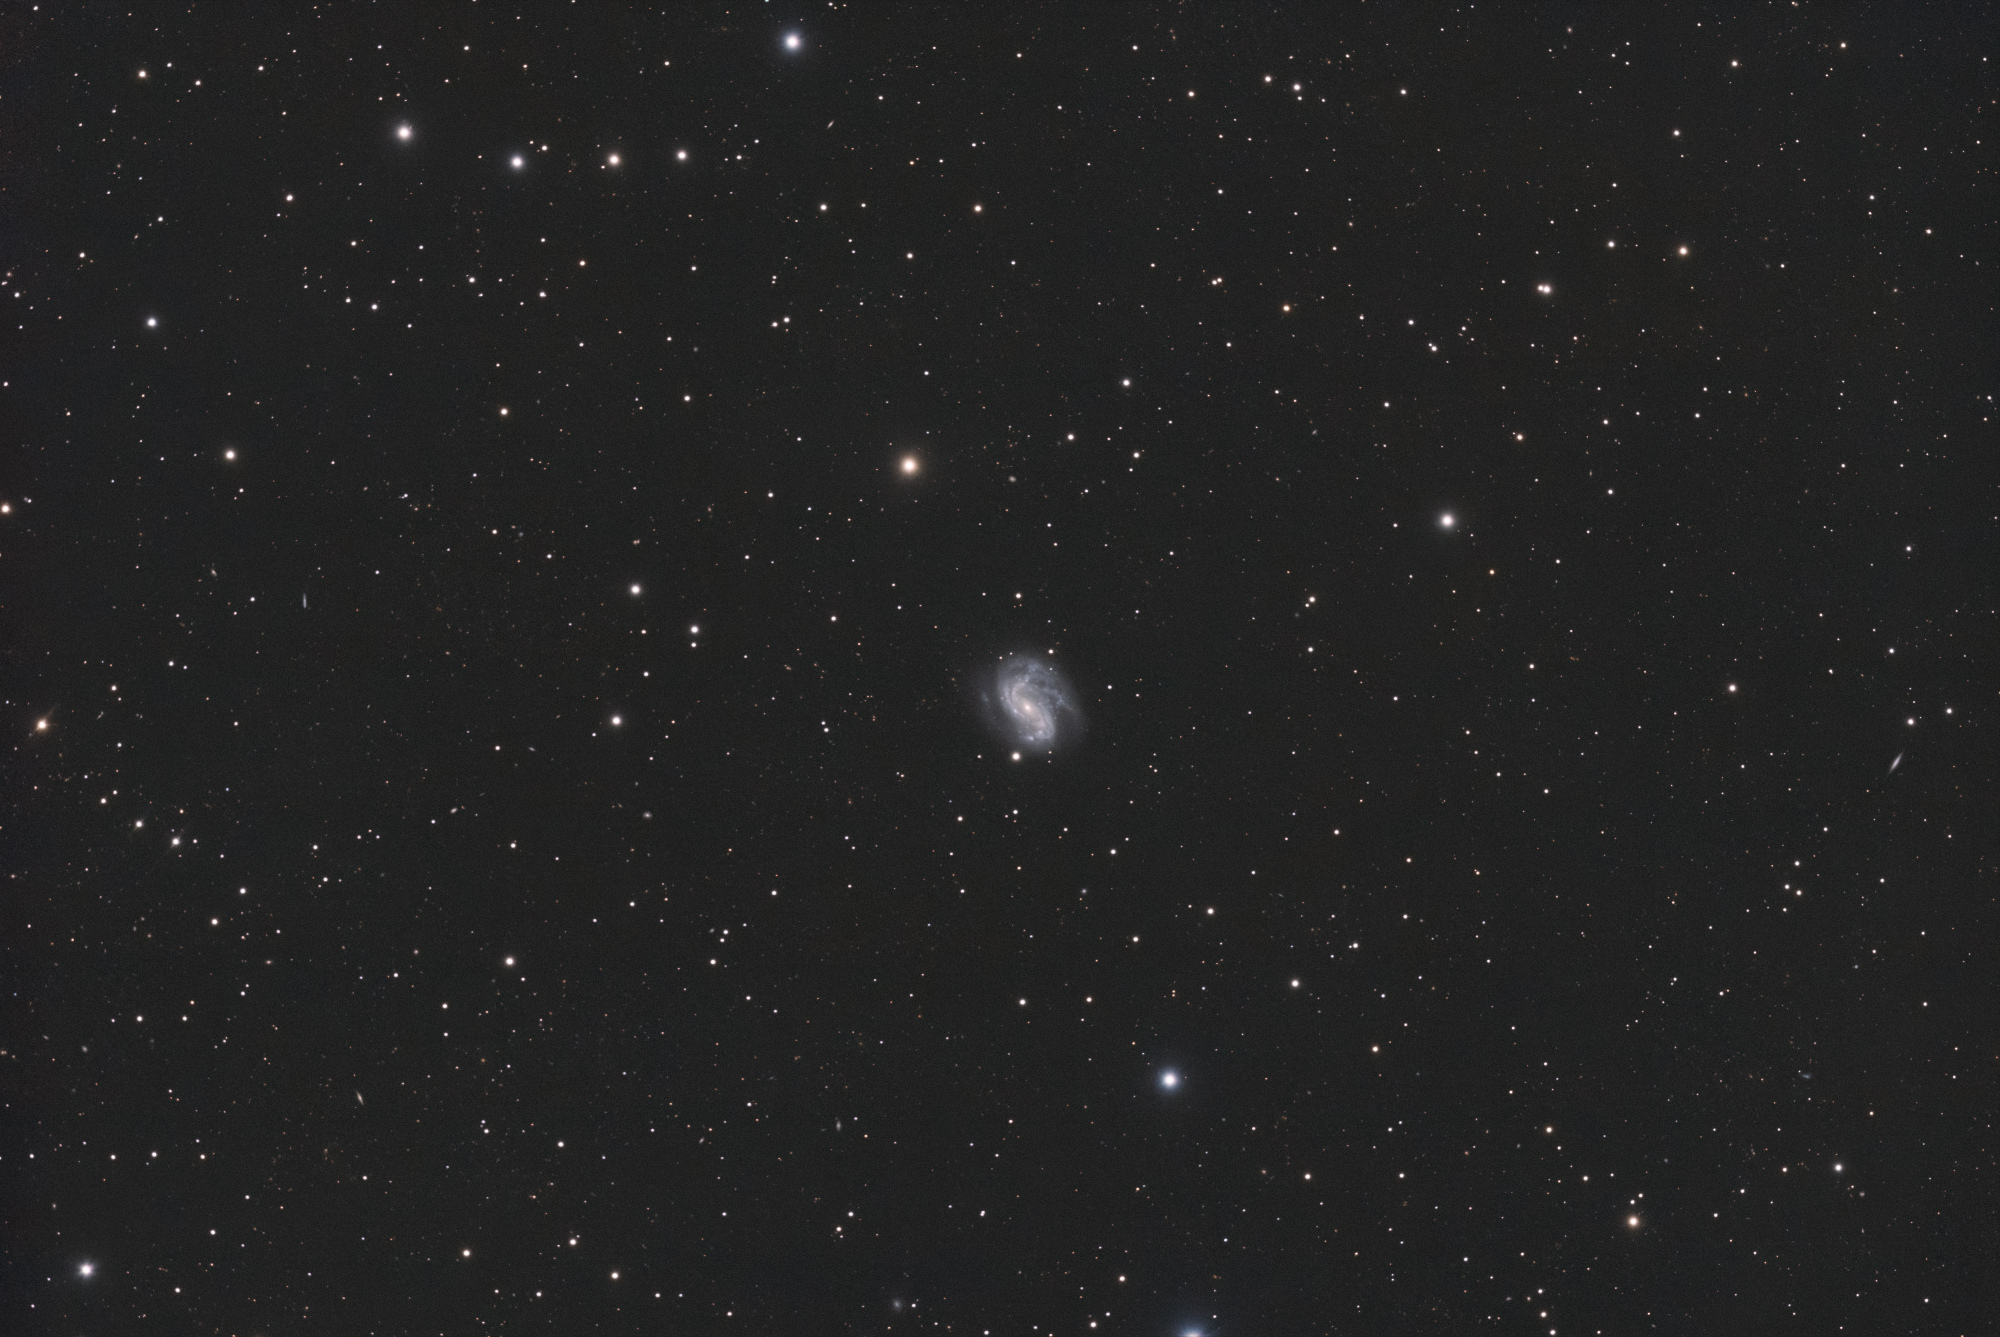 NGC 4051_SIRIL-L2-iris-cs5-4-FINAL-2-x.jpg